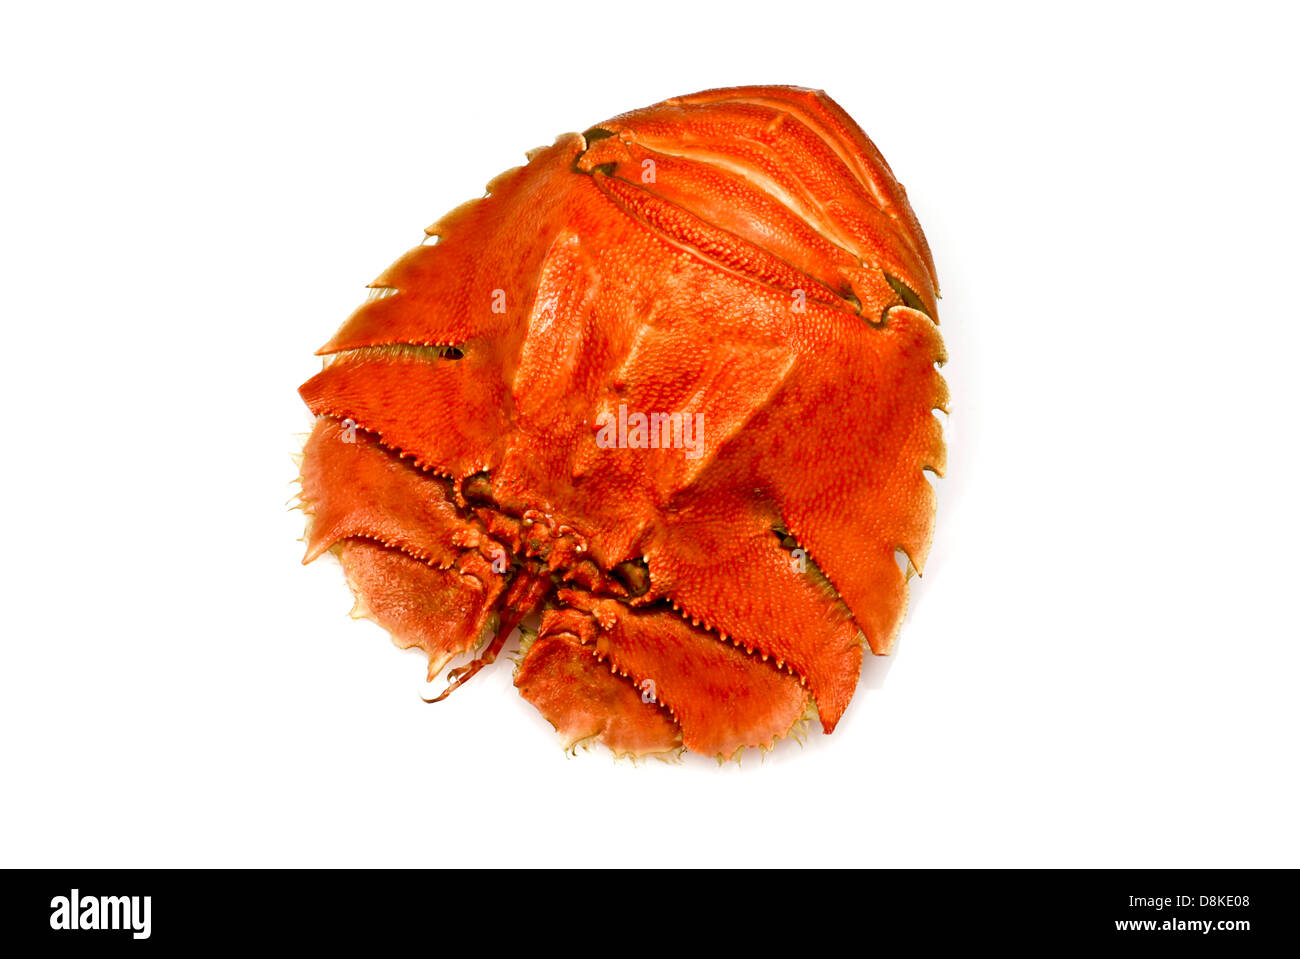 Balmain bug hi-res stock photography and images - Alamy